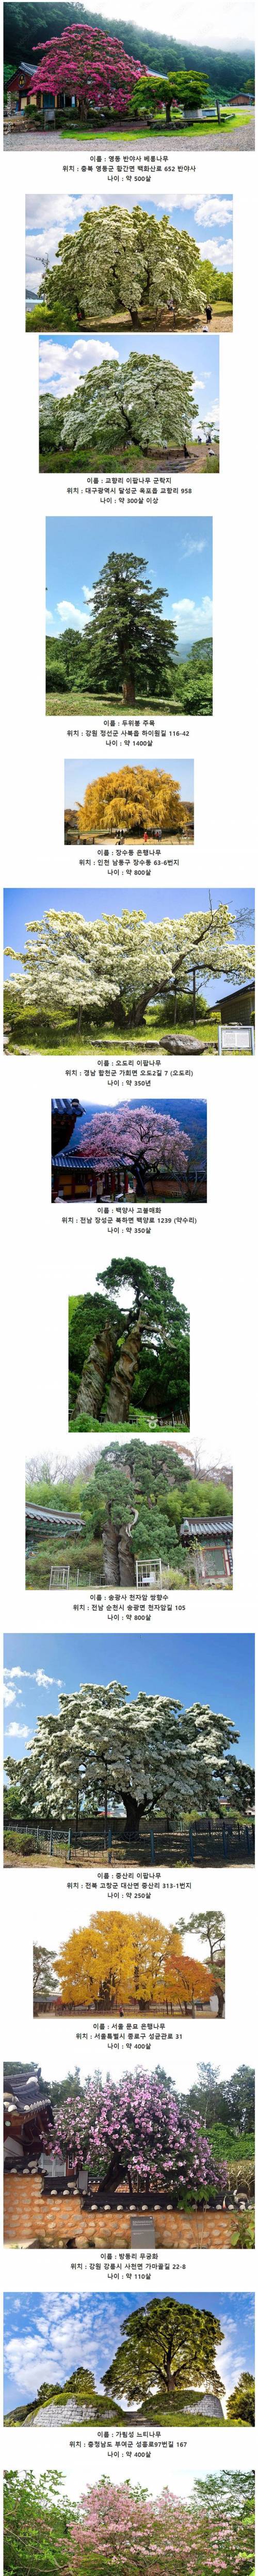 19 한국에 존재하는 오래된 고목들.jpg